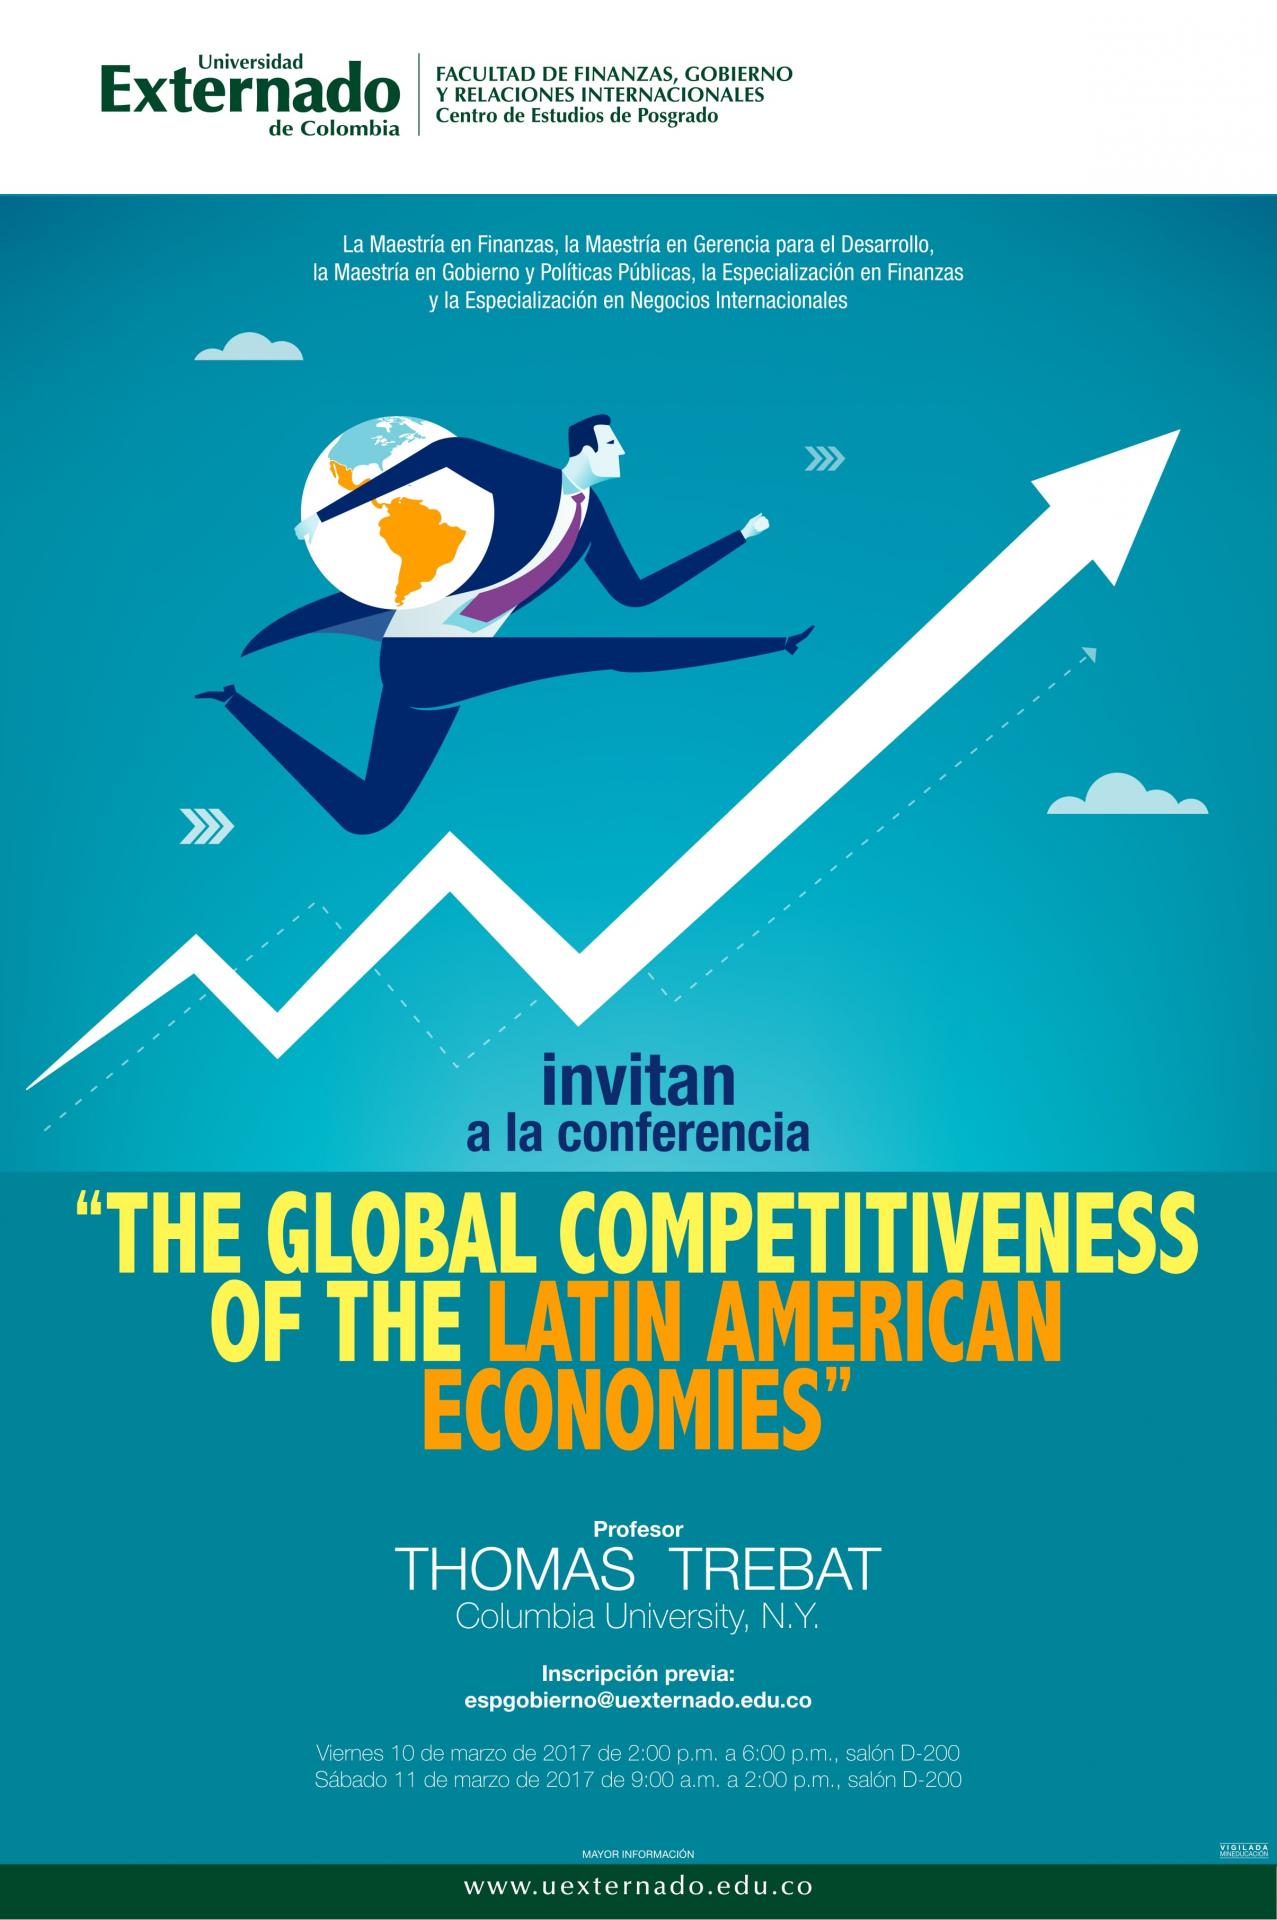 Poster invitation to Thomas' lecture at Universidad Externado de Colombia